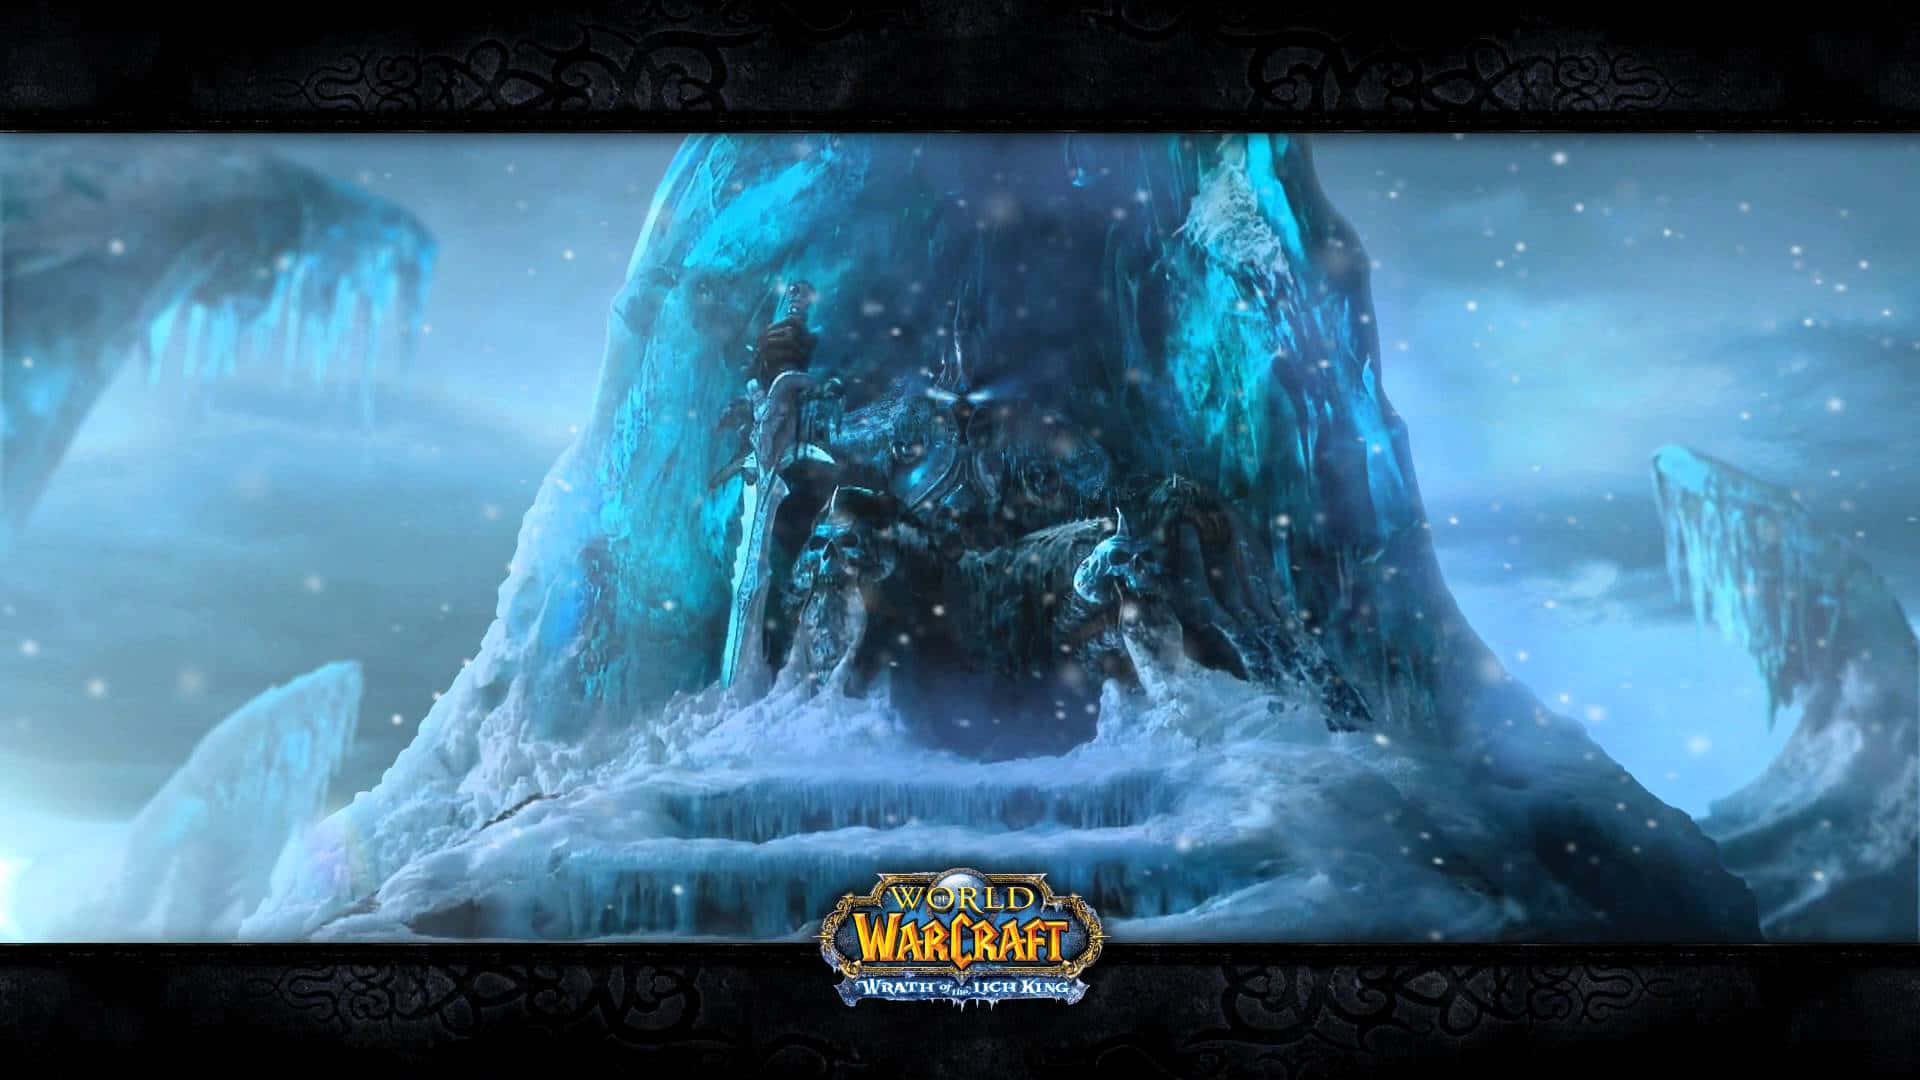 Papelde Parede Do Trono De Gelo De World Of Warcraft. Papel de Parede